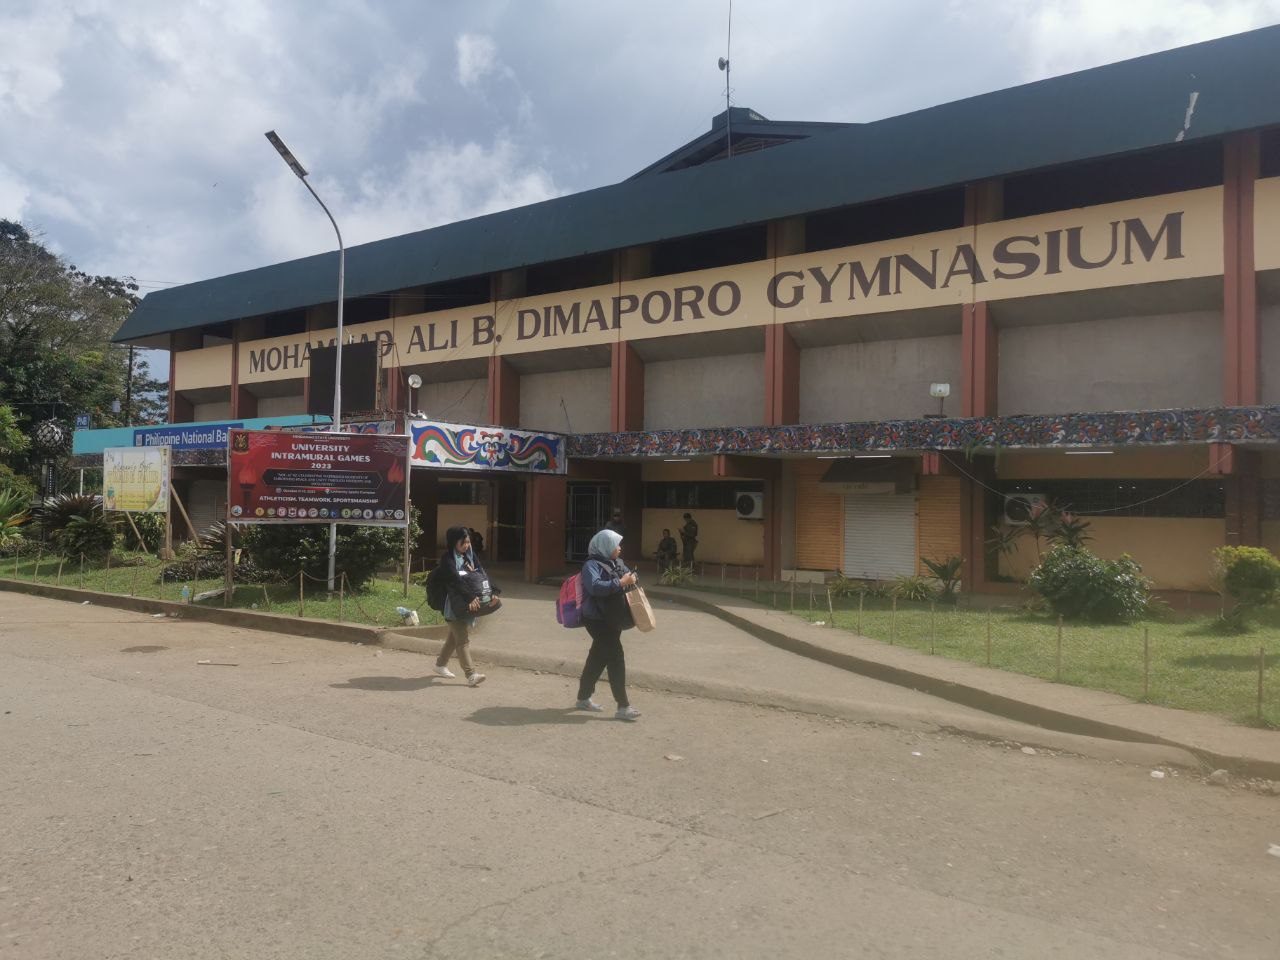 Mindanao State University bombing - Wikipedia